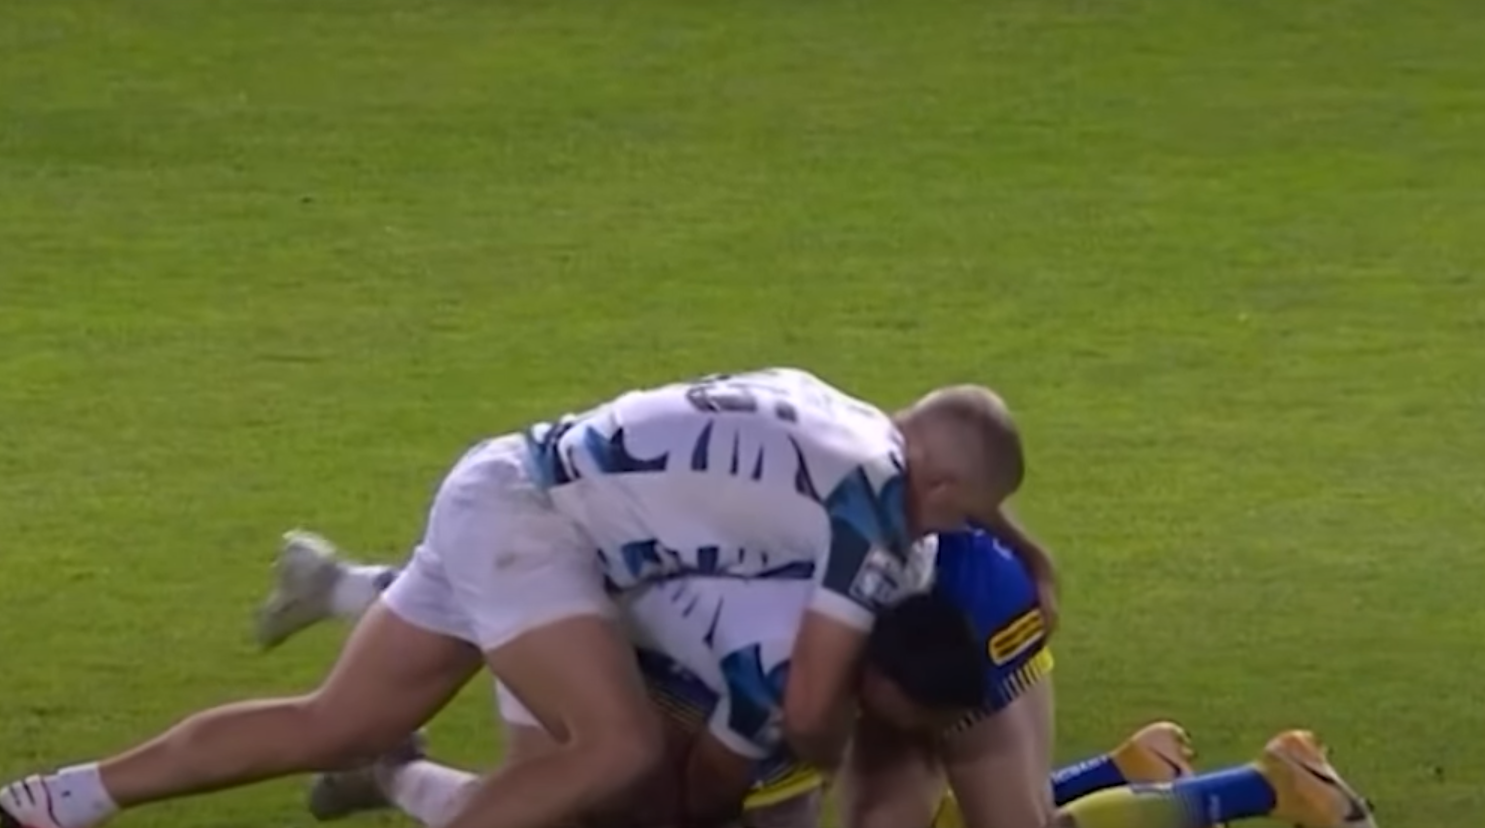 Suspenden a jugador de Rugby del Touluse Olympique por tratar de meter un dedo a su rival: VIDEO